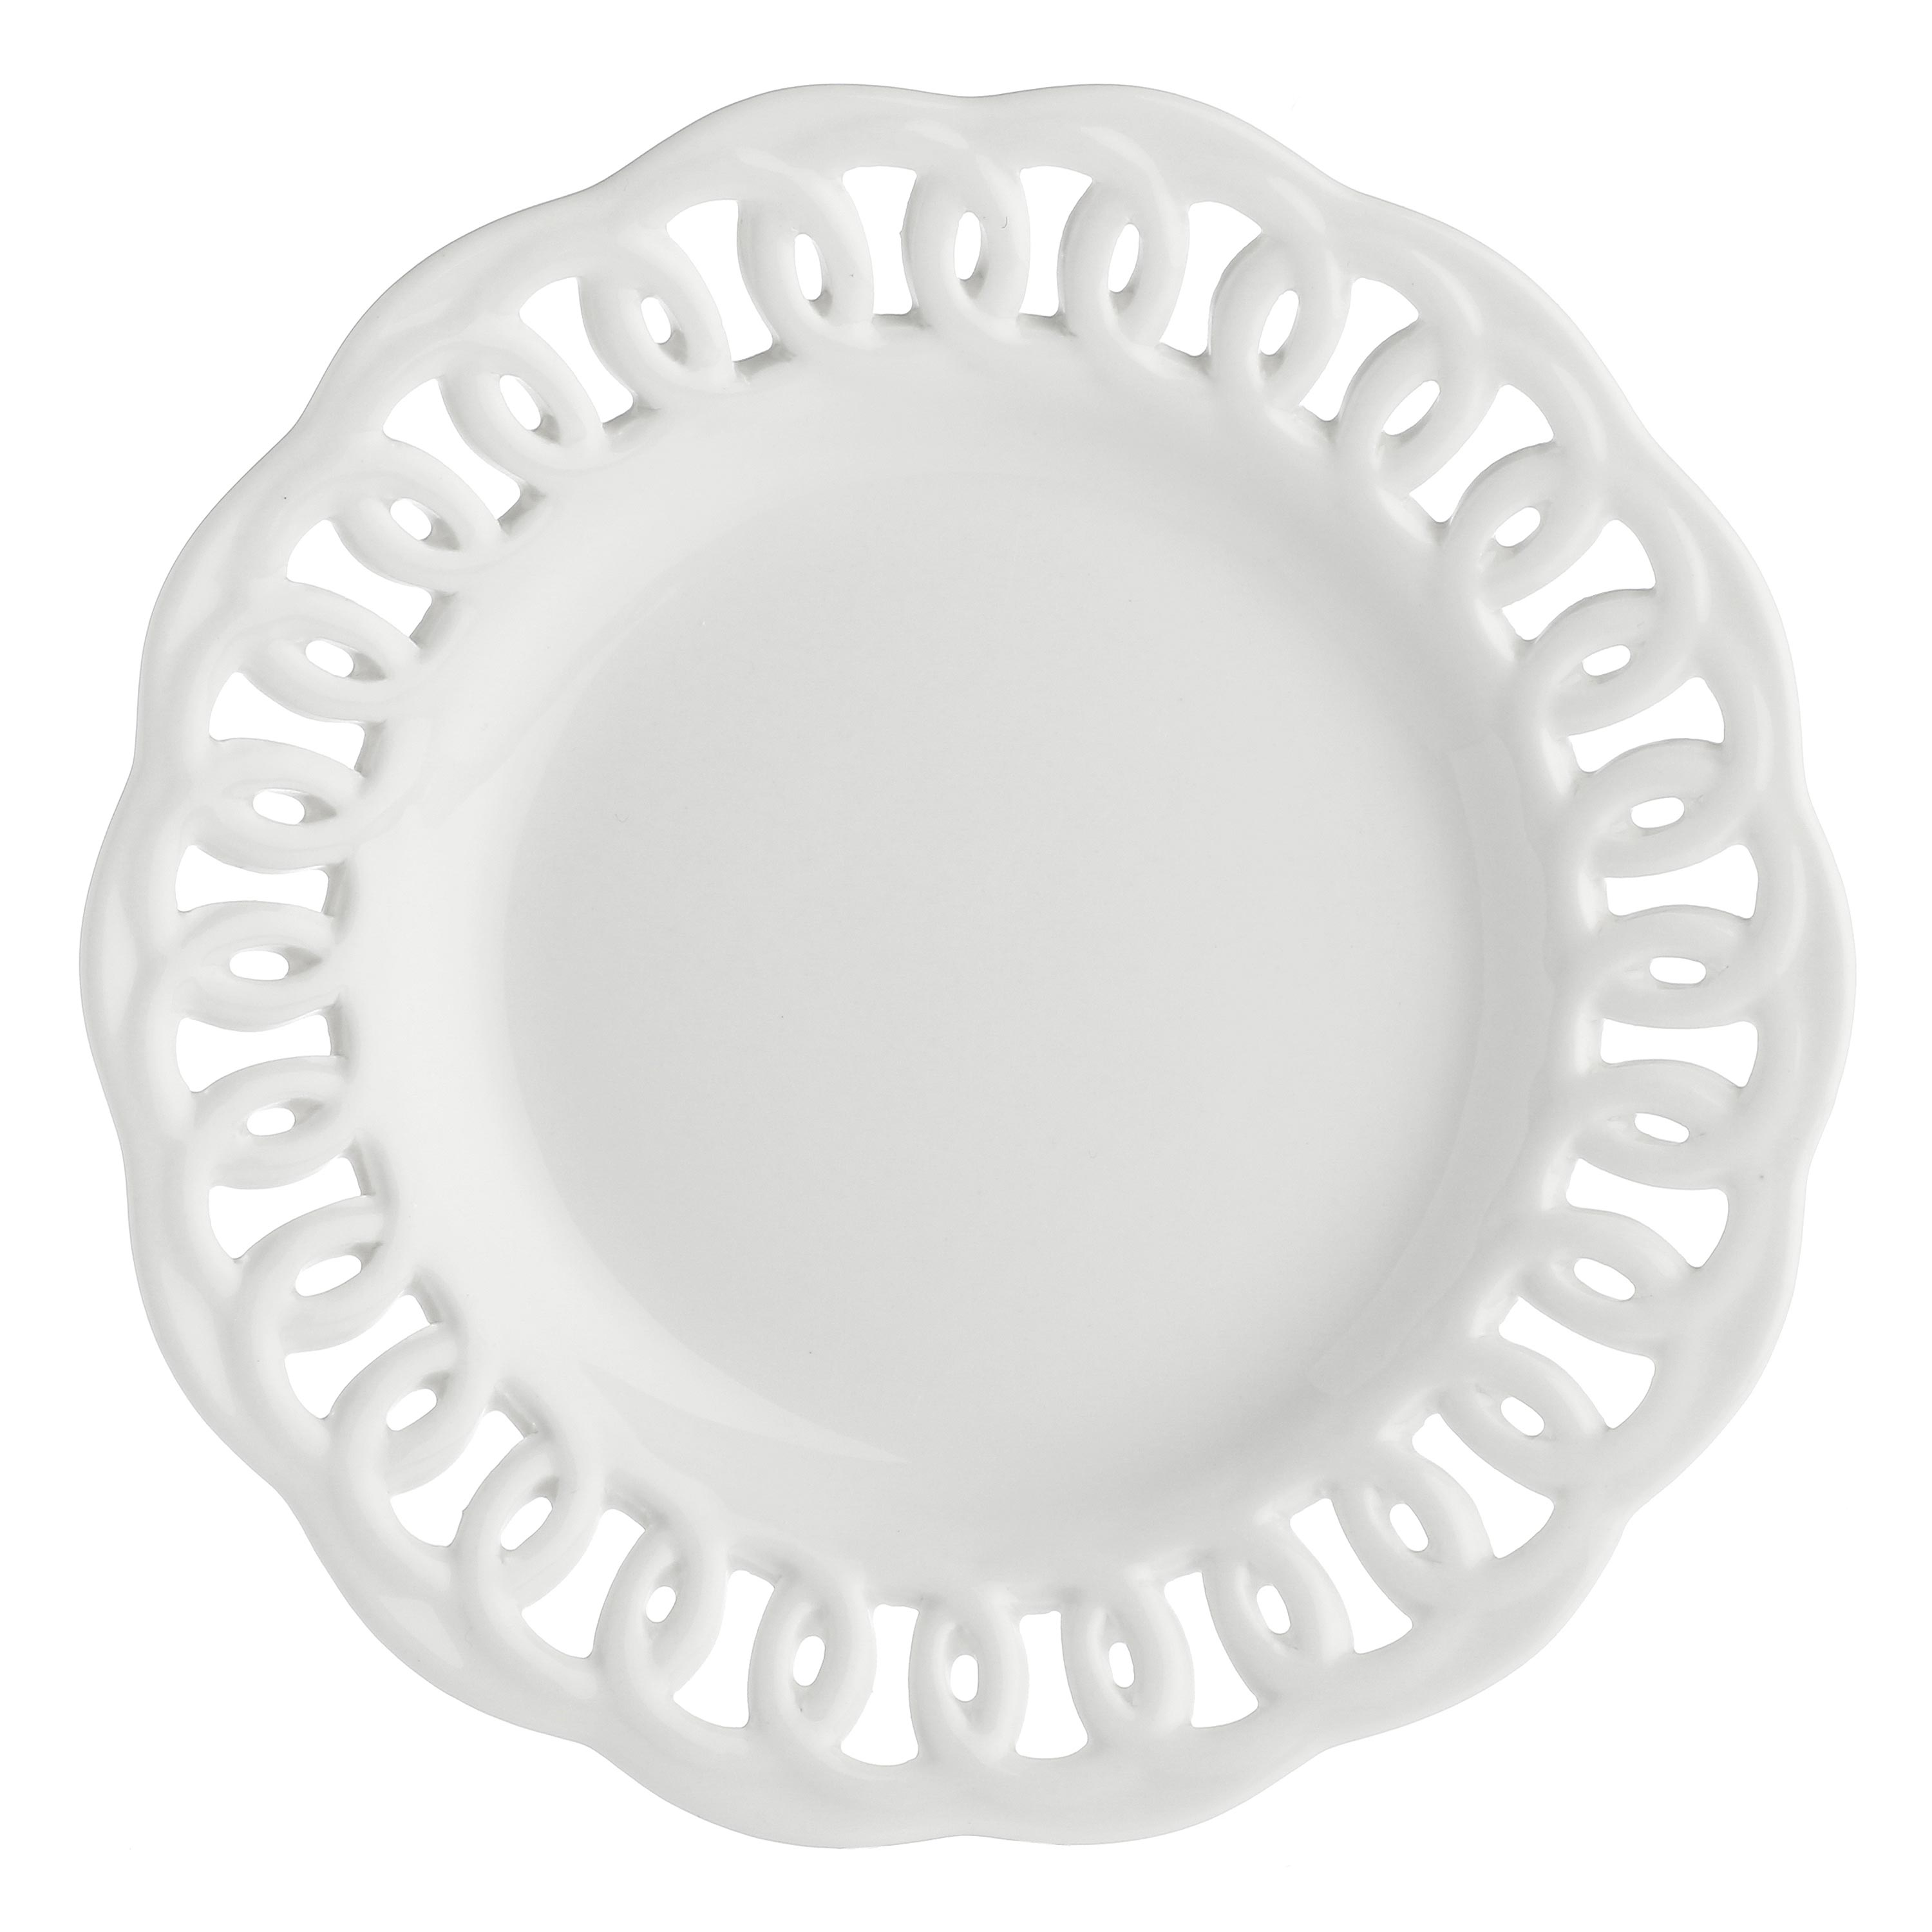 La porcellana bianca - piatto traforato